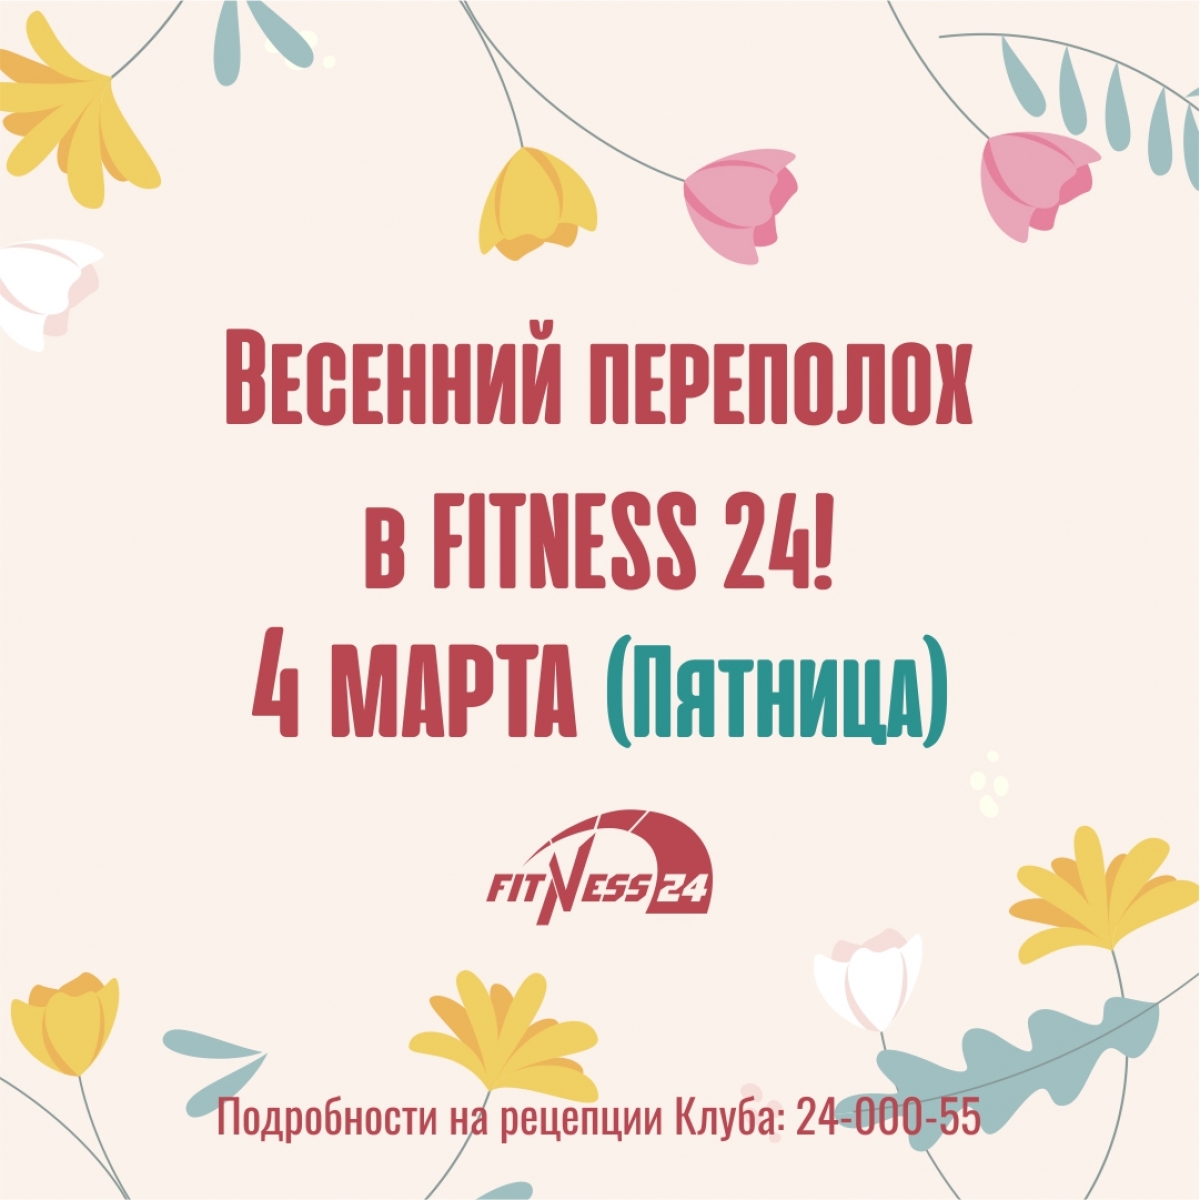 Весенний переполох в Fitness24 Ветеранов!